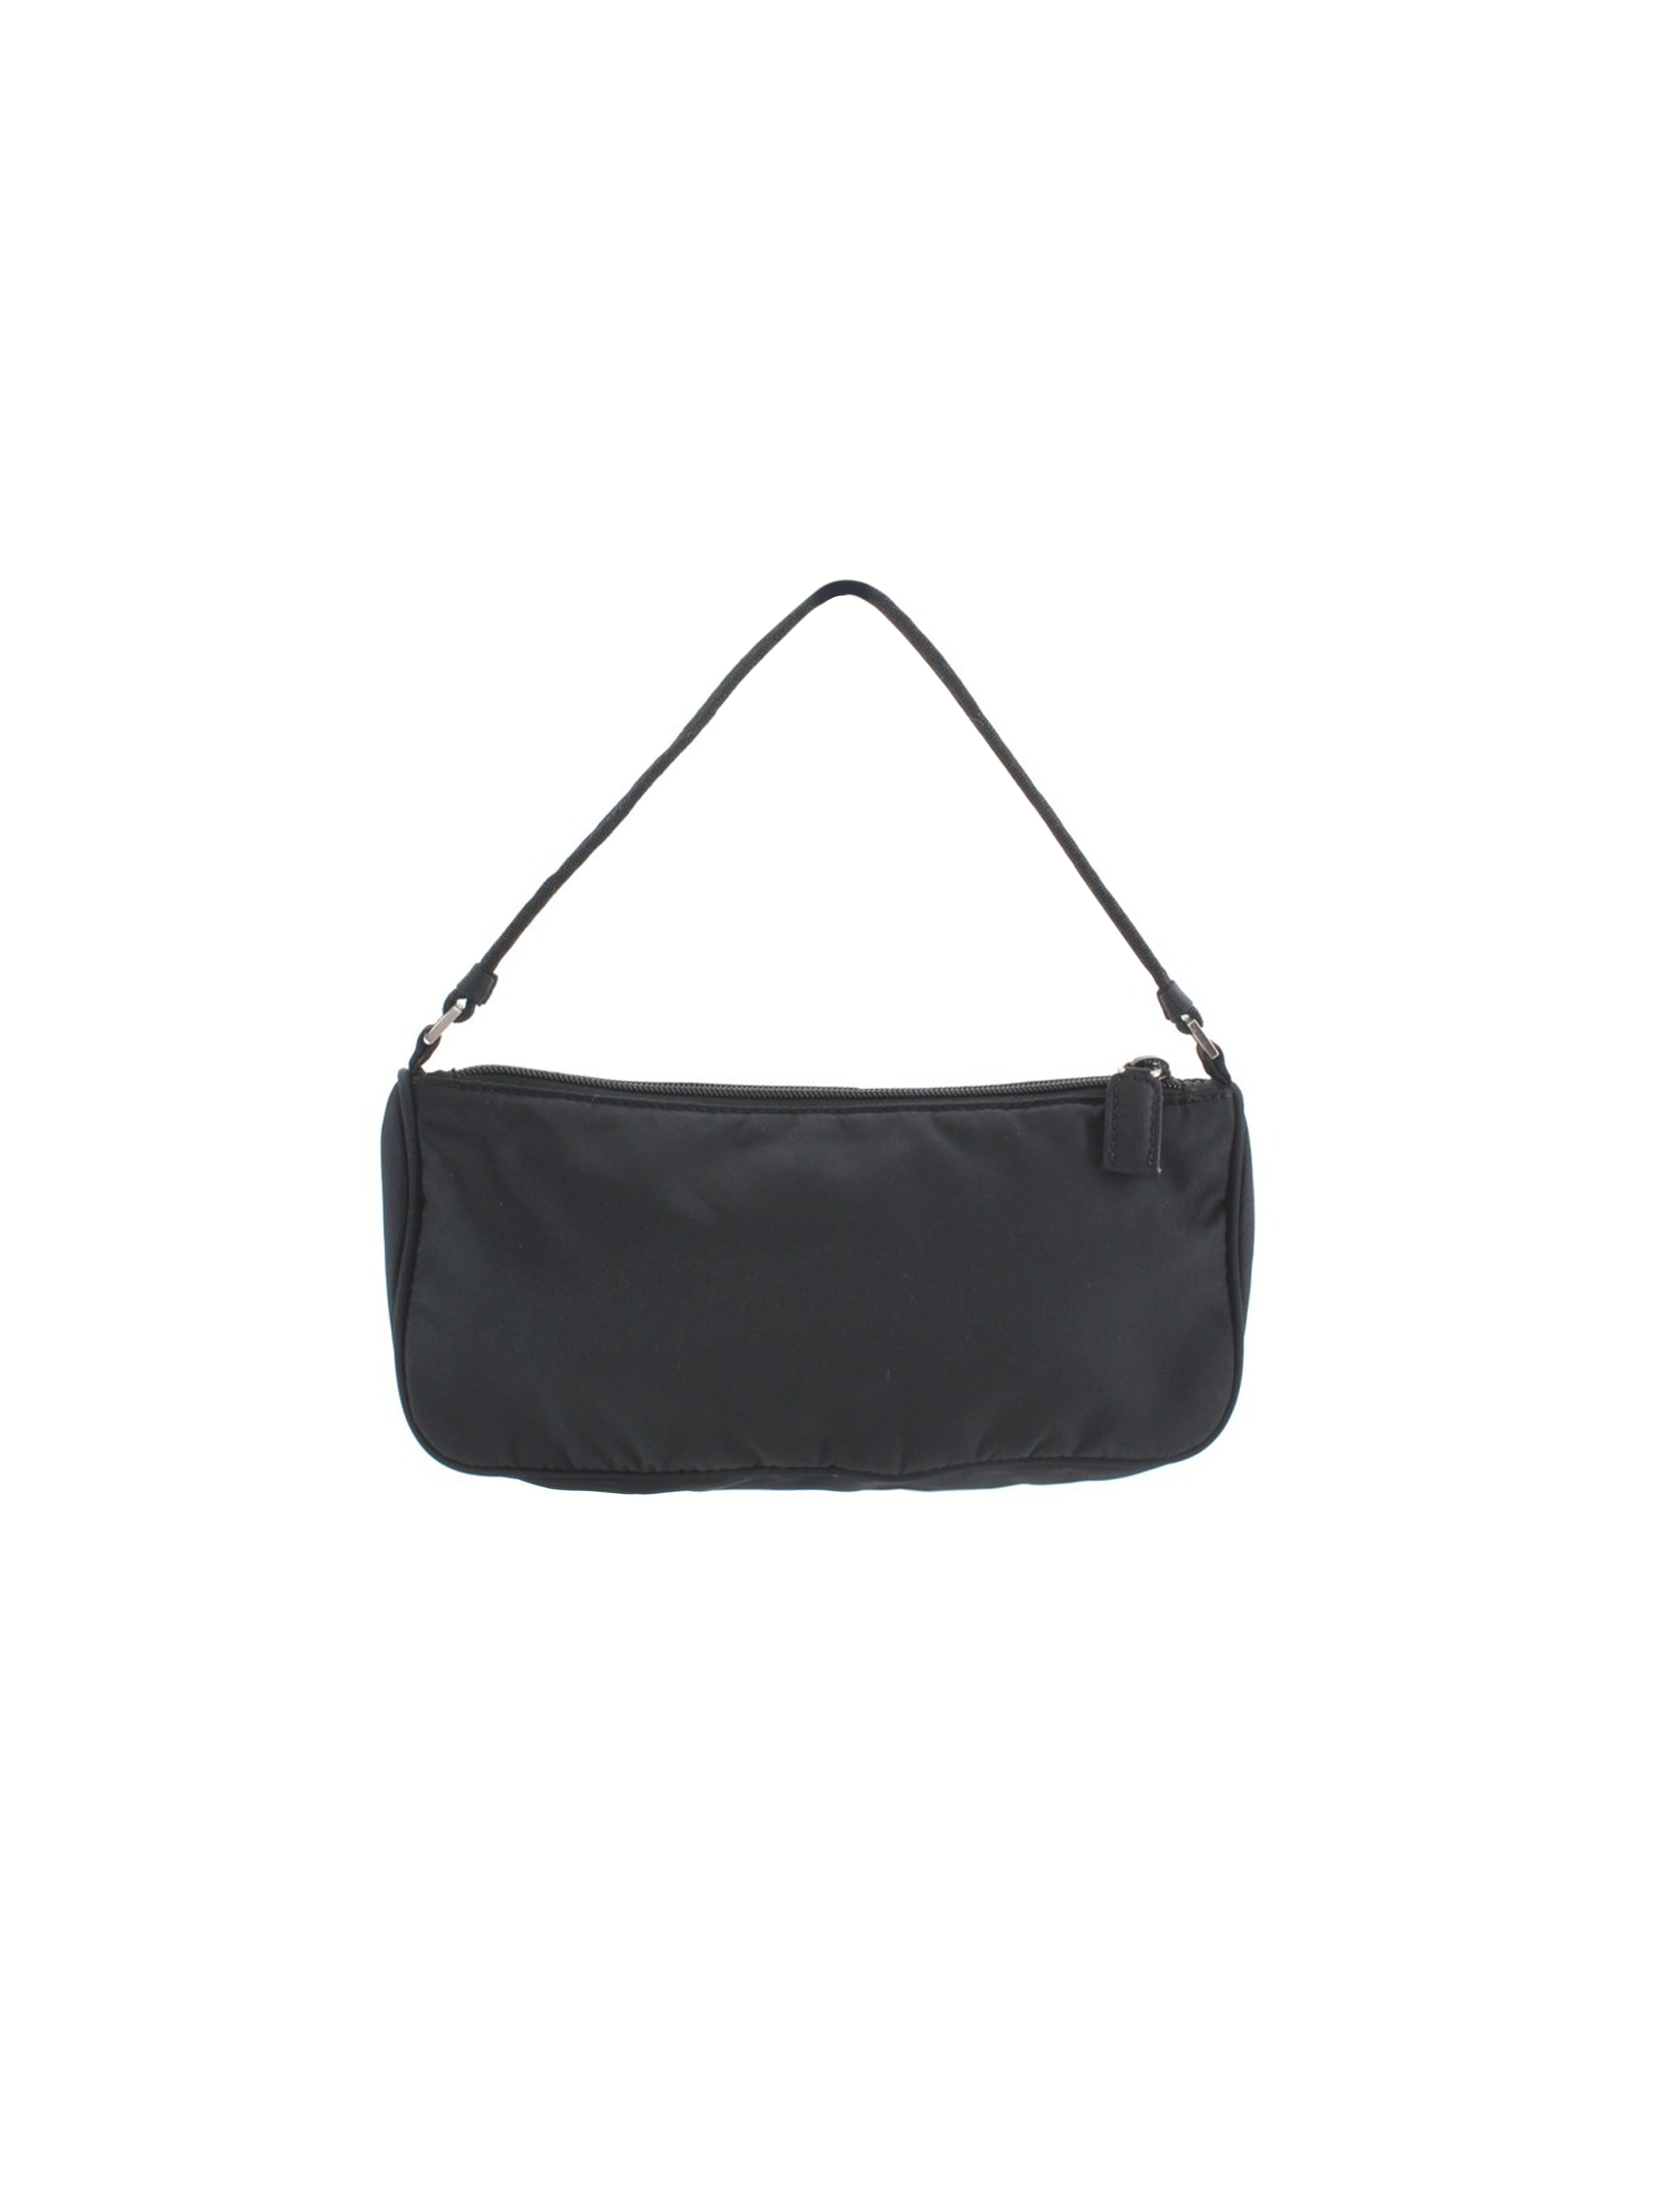 Prada 2000s Black Nylon Tessuto Handbag